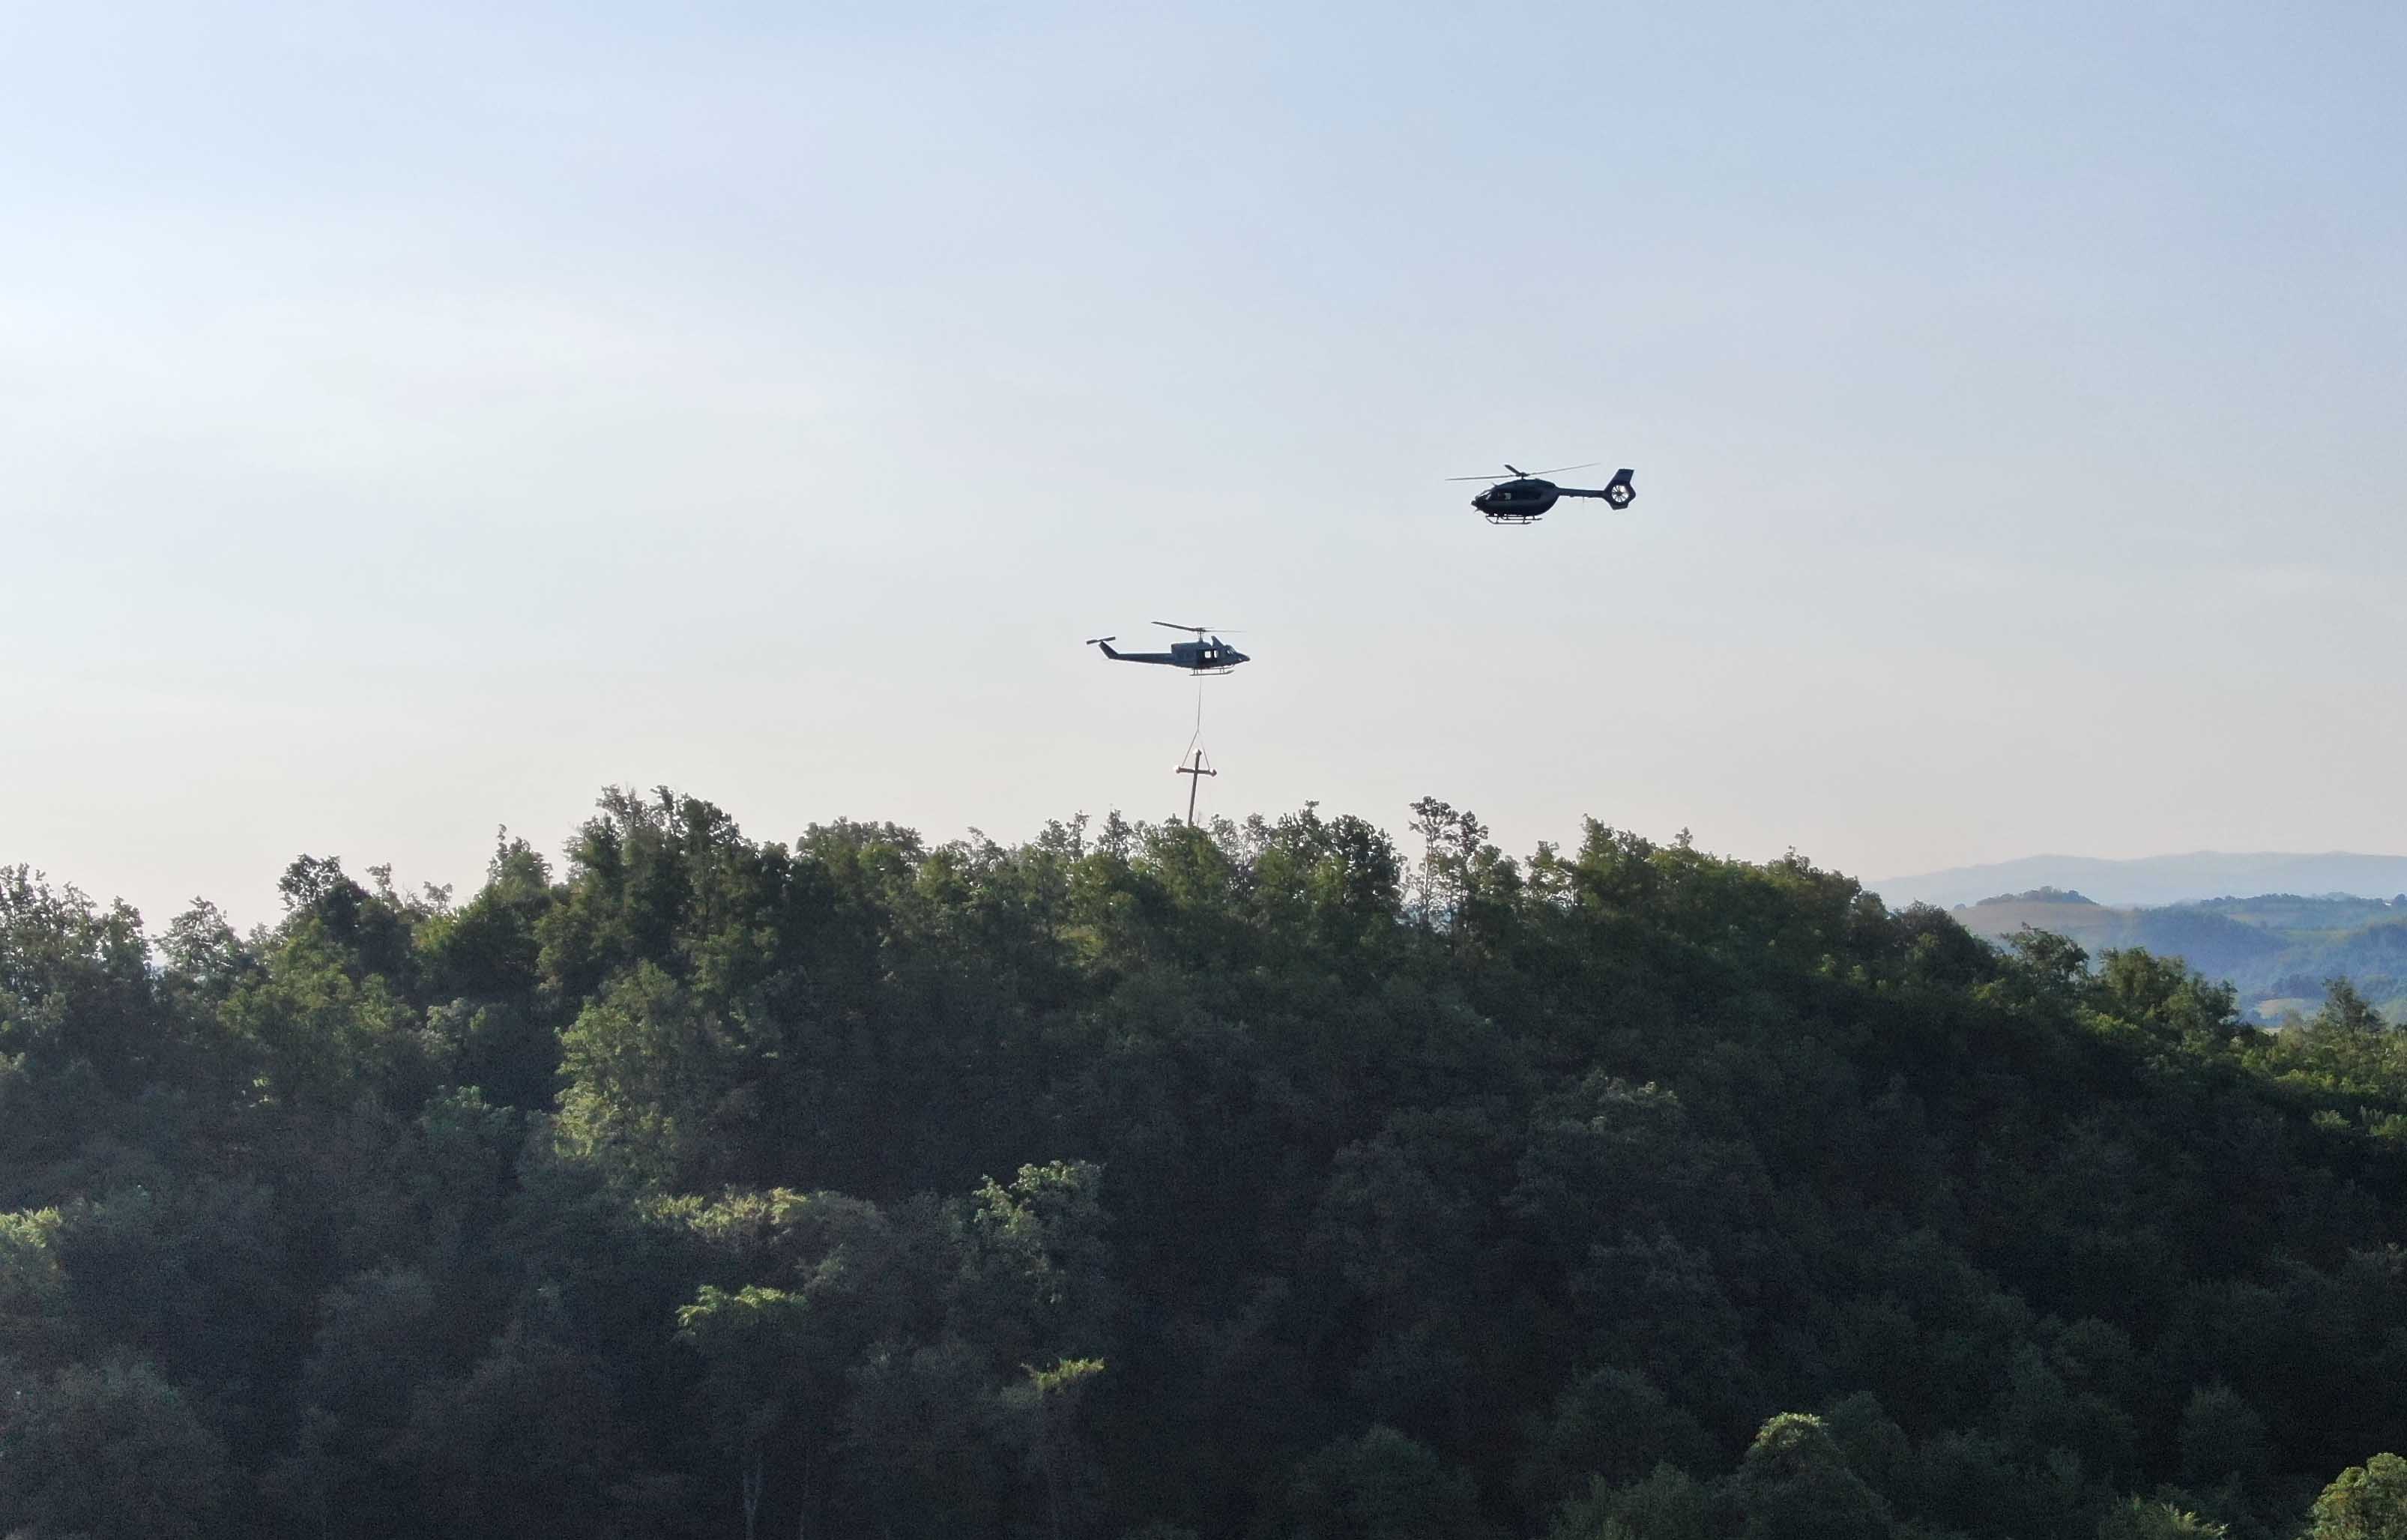 Припадници Хеликоптерске јединице учествовали у подизању крста на брду Бојчица